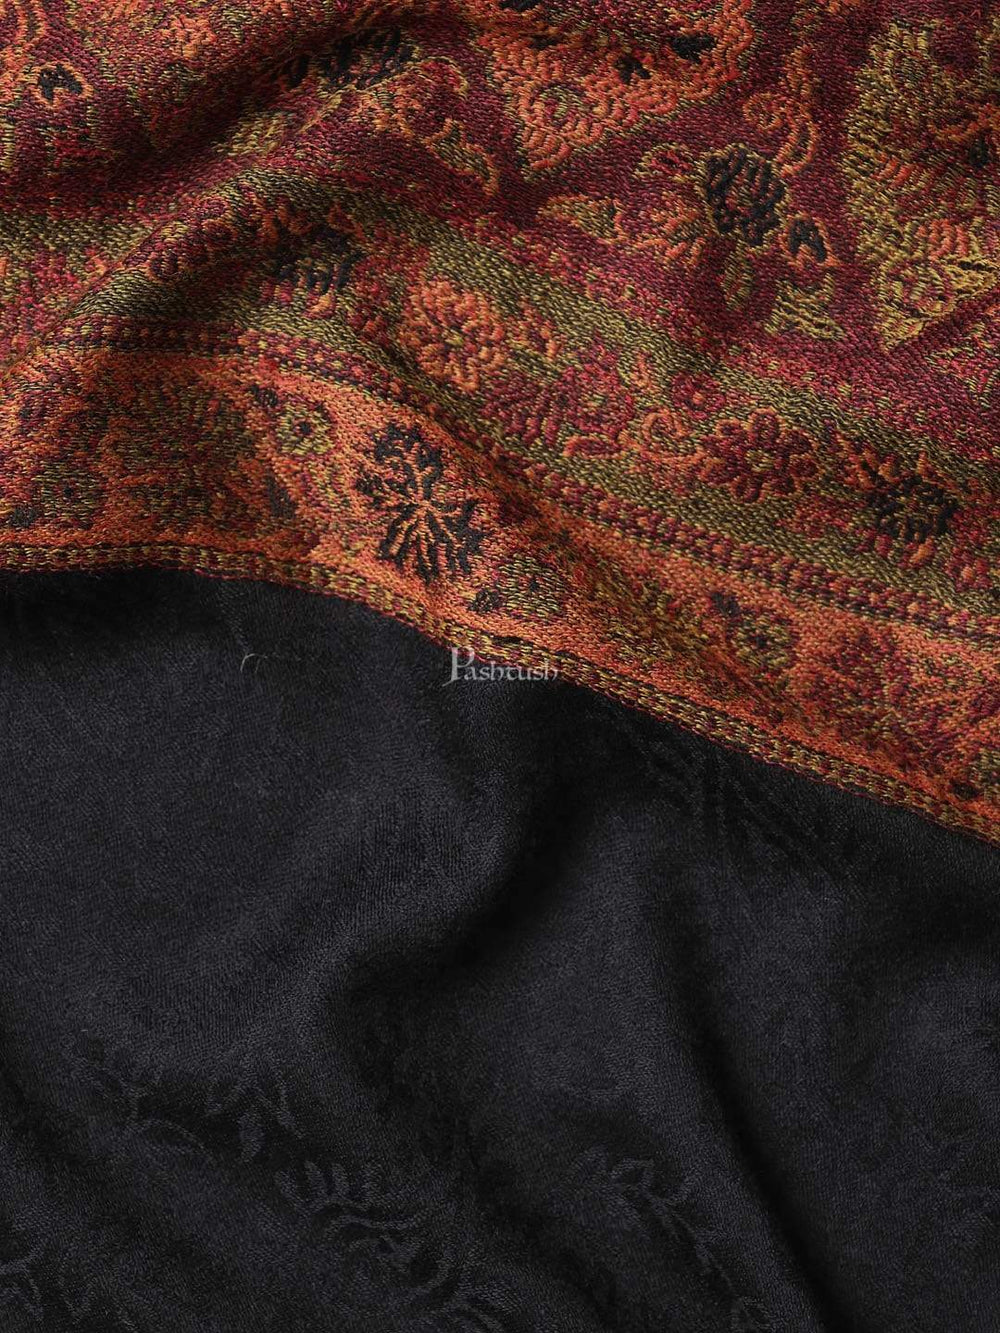 Pashtush India 70x200 Pashtush Mens Fine Wool Stole, Tuscan Sun, Black